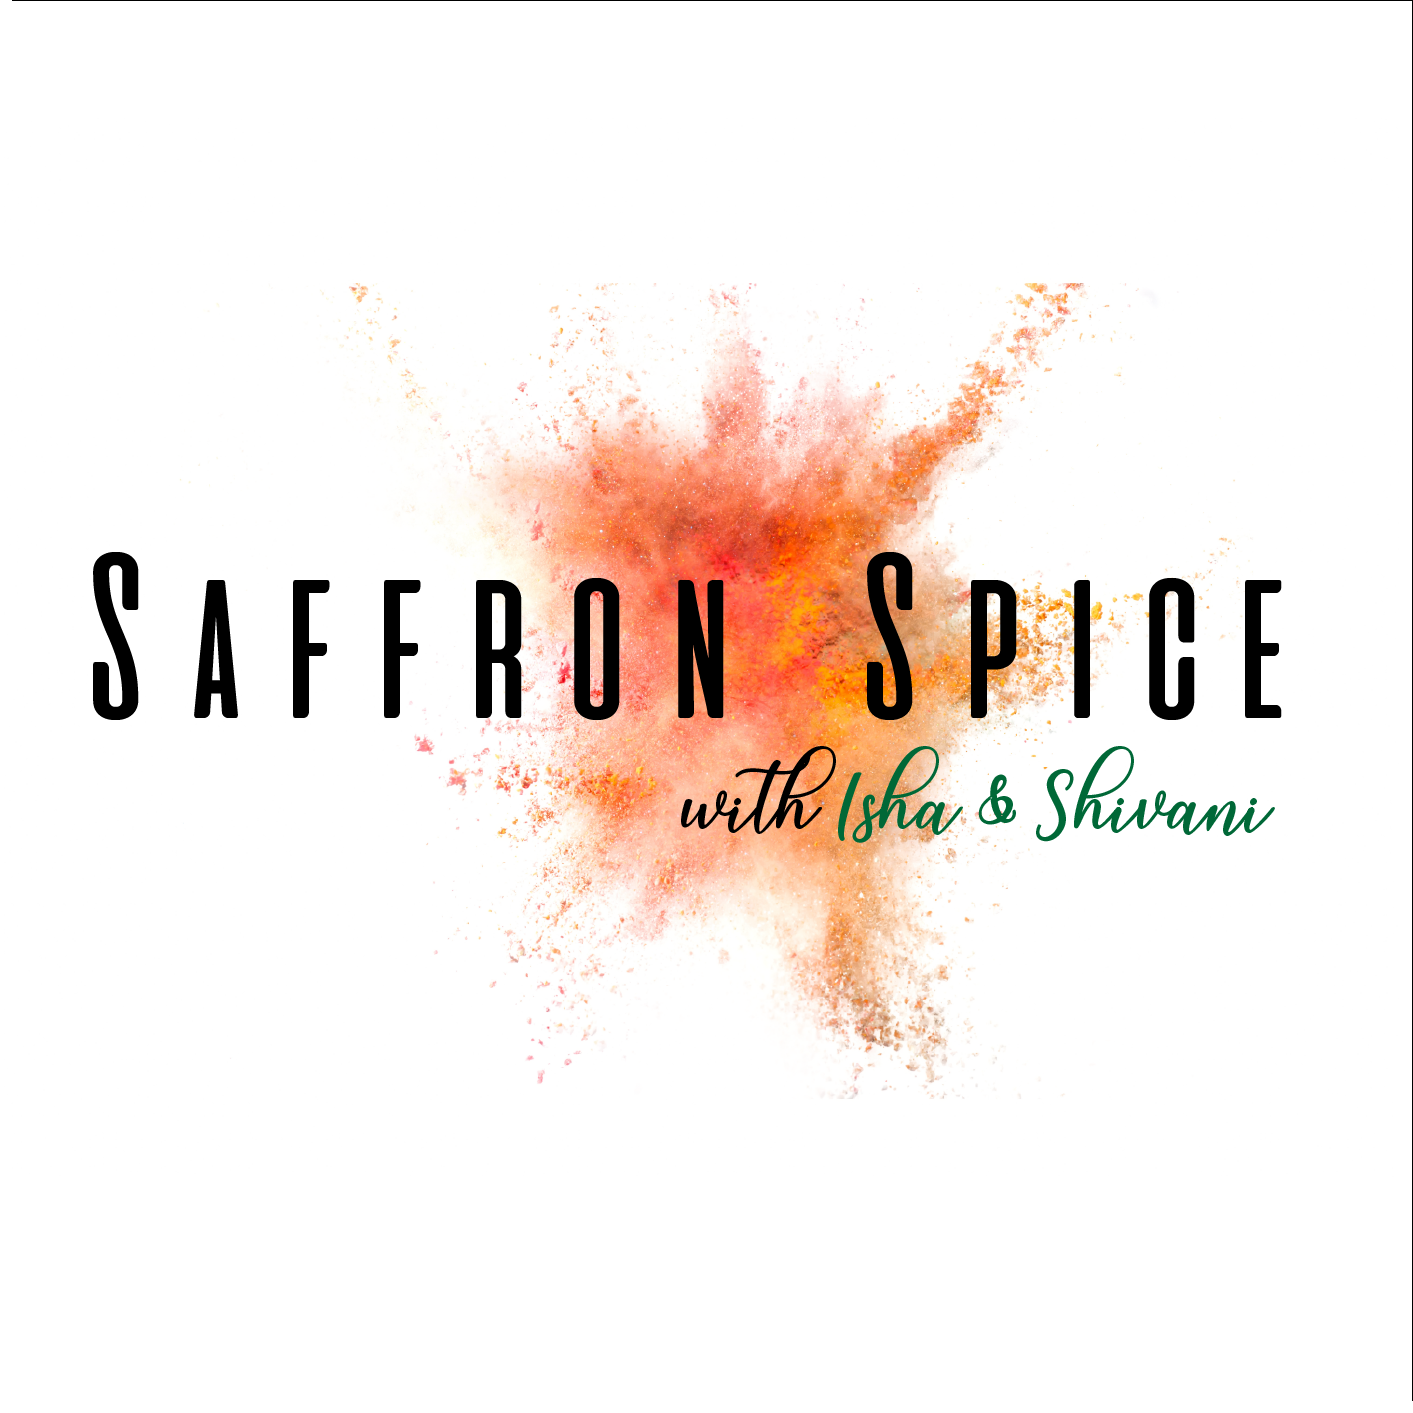 Saffron Spice with Isha & Shivani